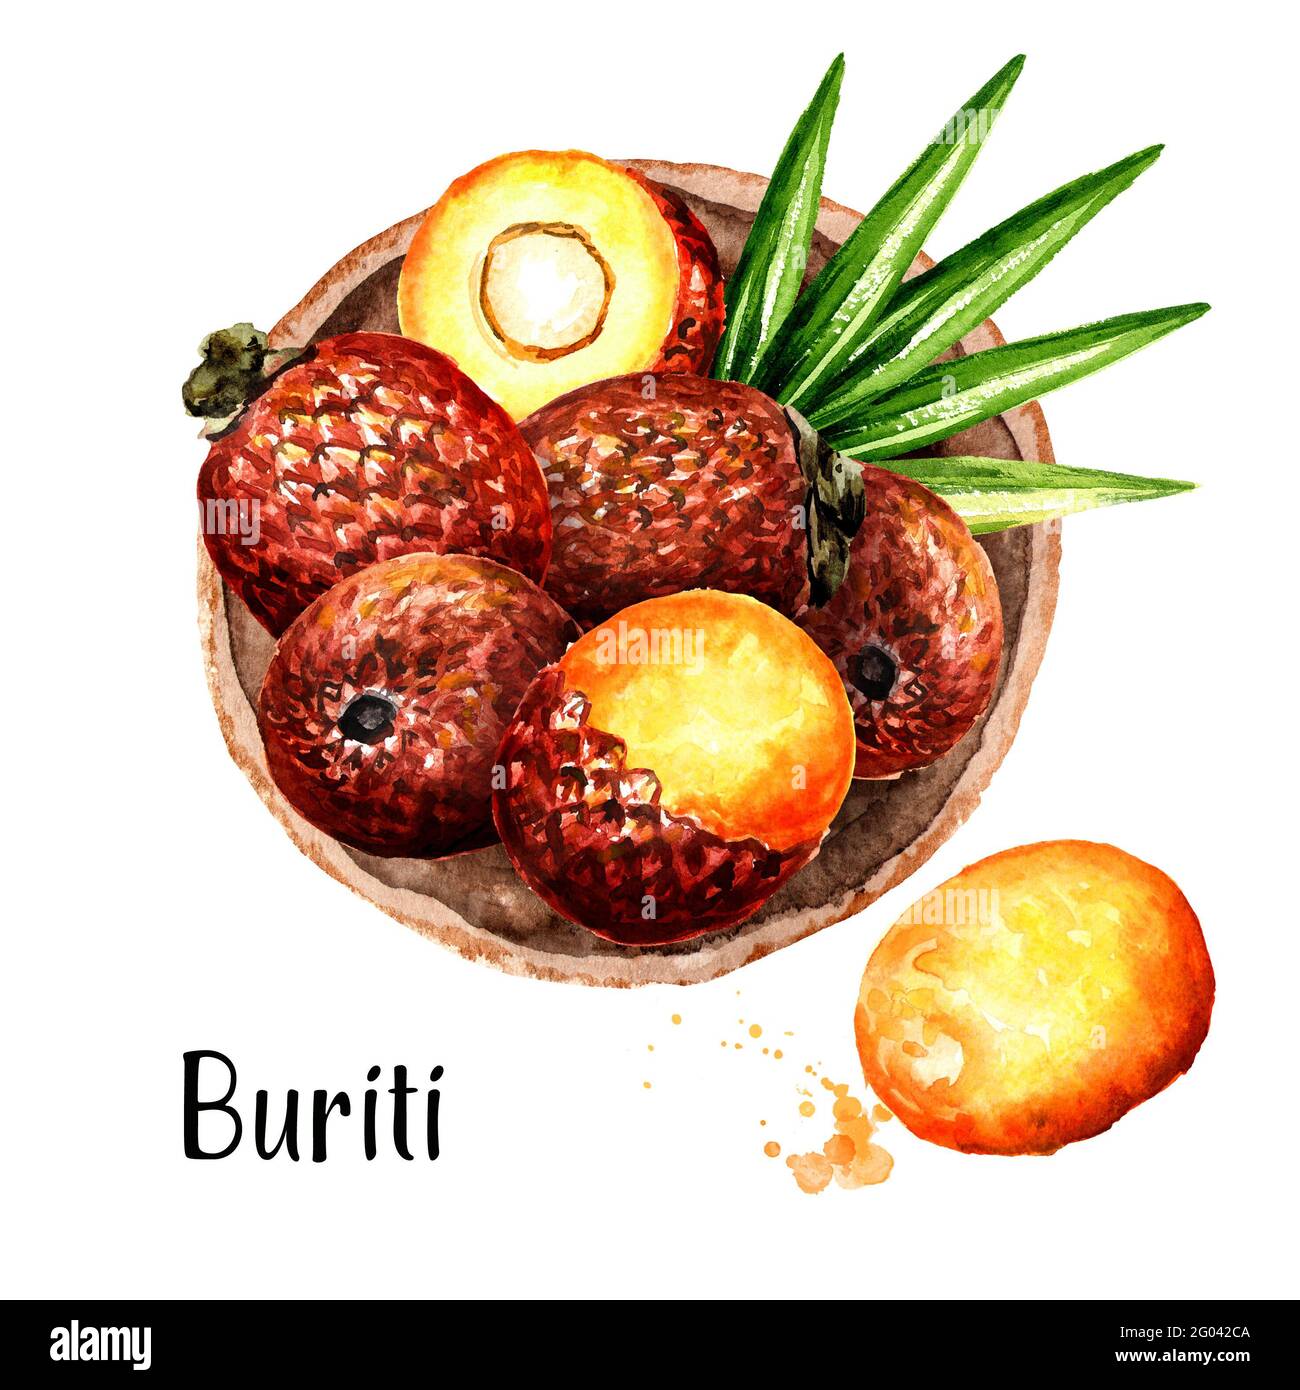 Assiette de fruits buriti, vue de dessus. Illustration aquarelle dessinée à la main, isolée sur fond blanc Banque D'Images